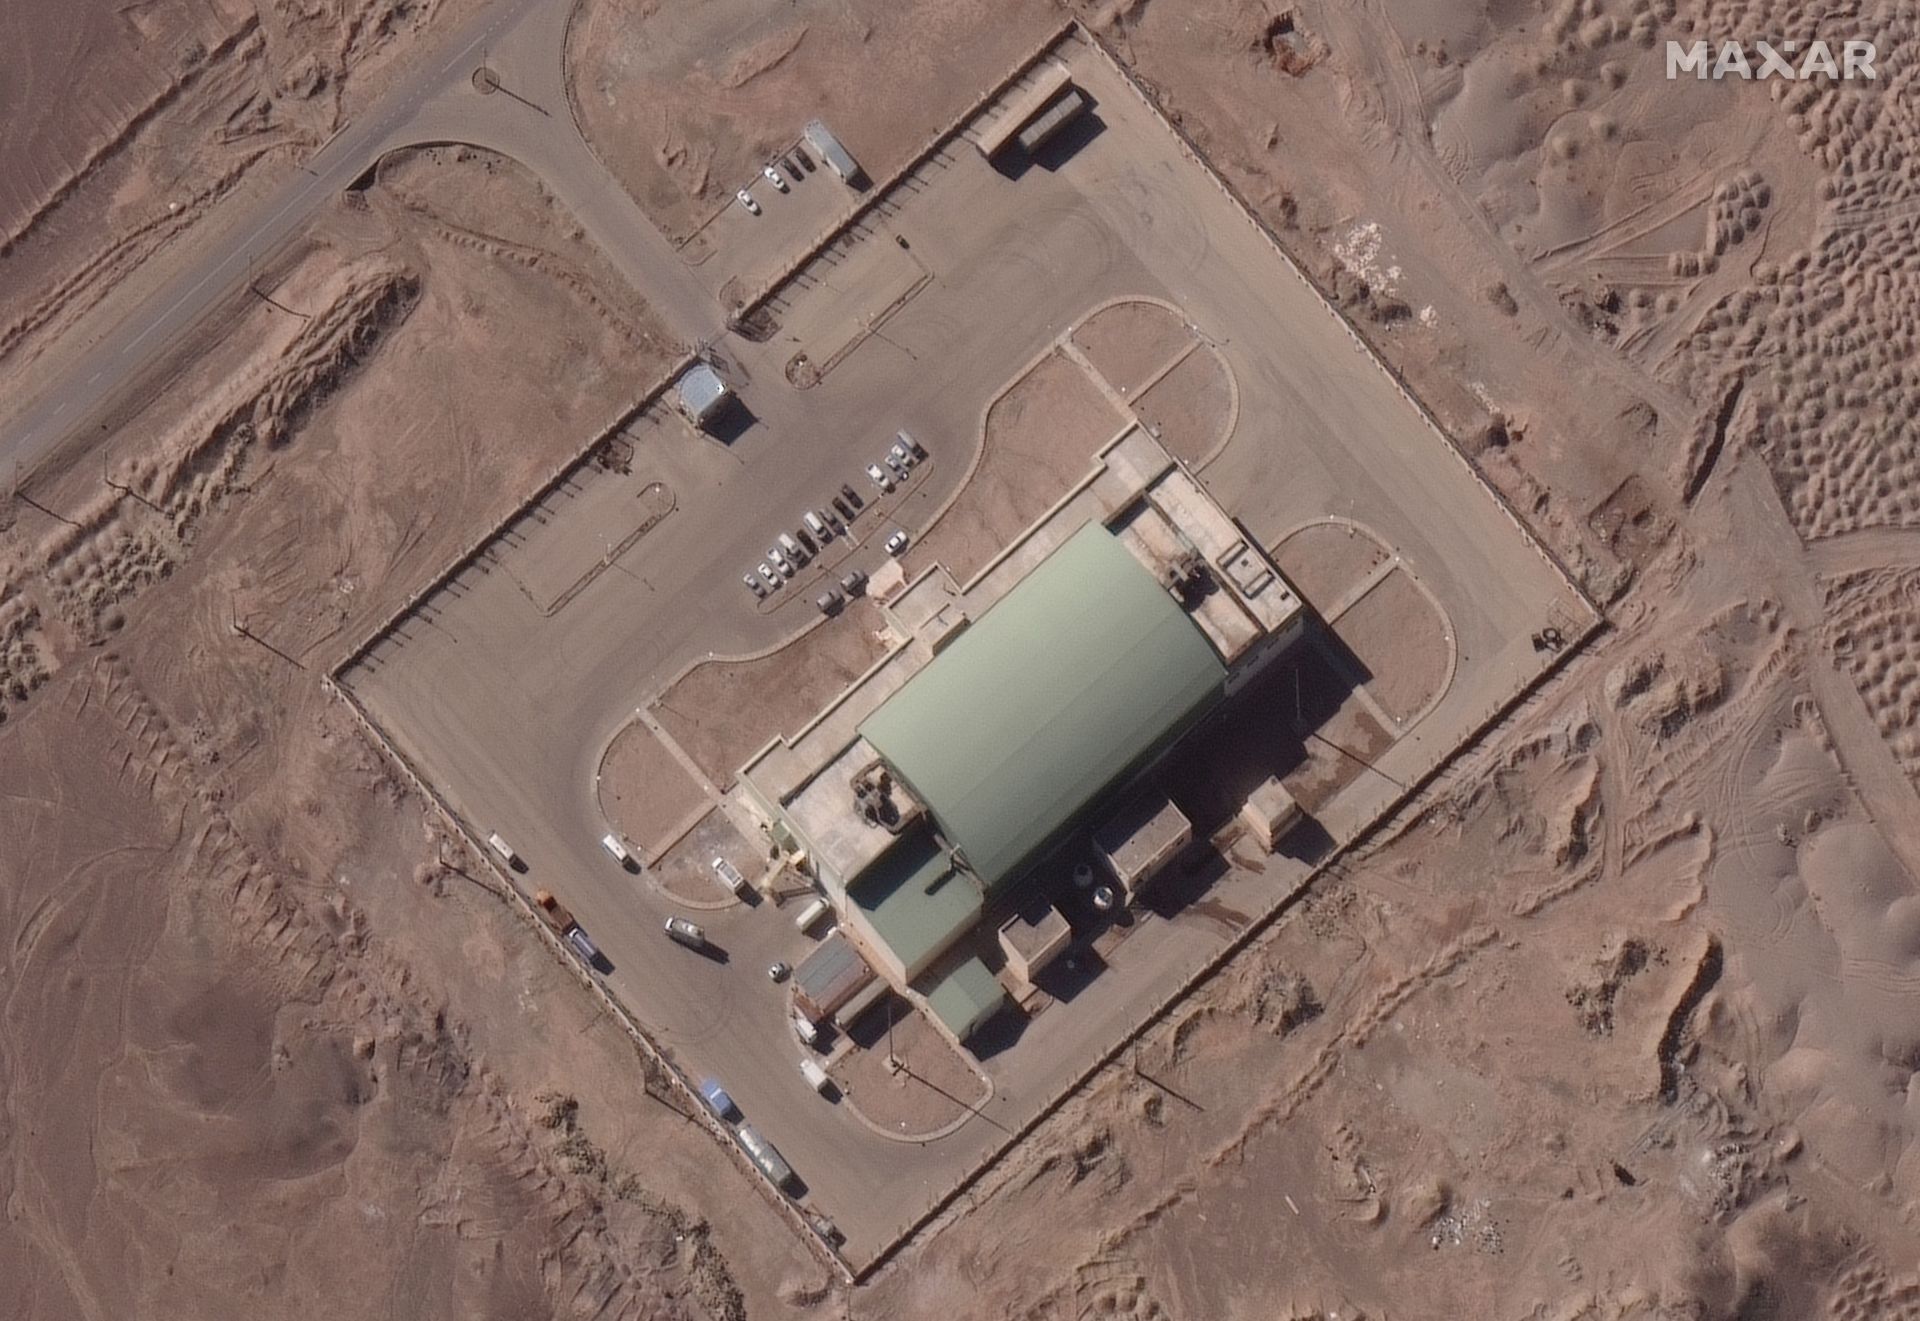 Това сателитно изображение от 4 февруари показва подготовка на ракета за изстрелване на сателита